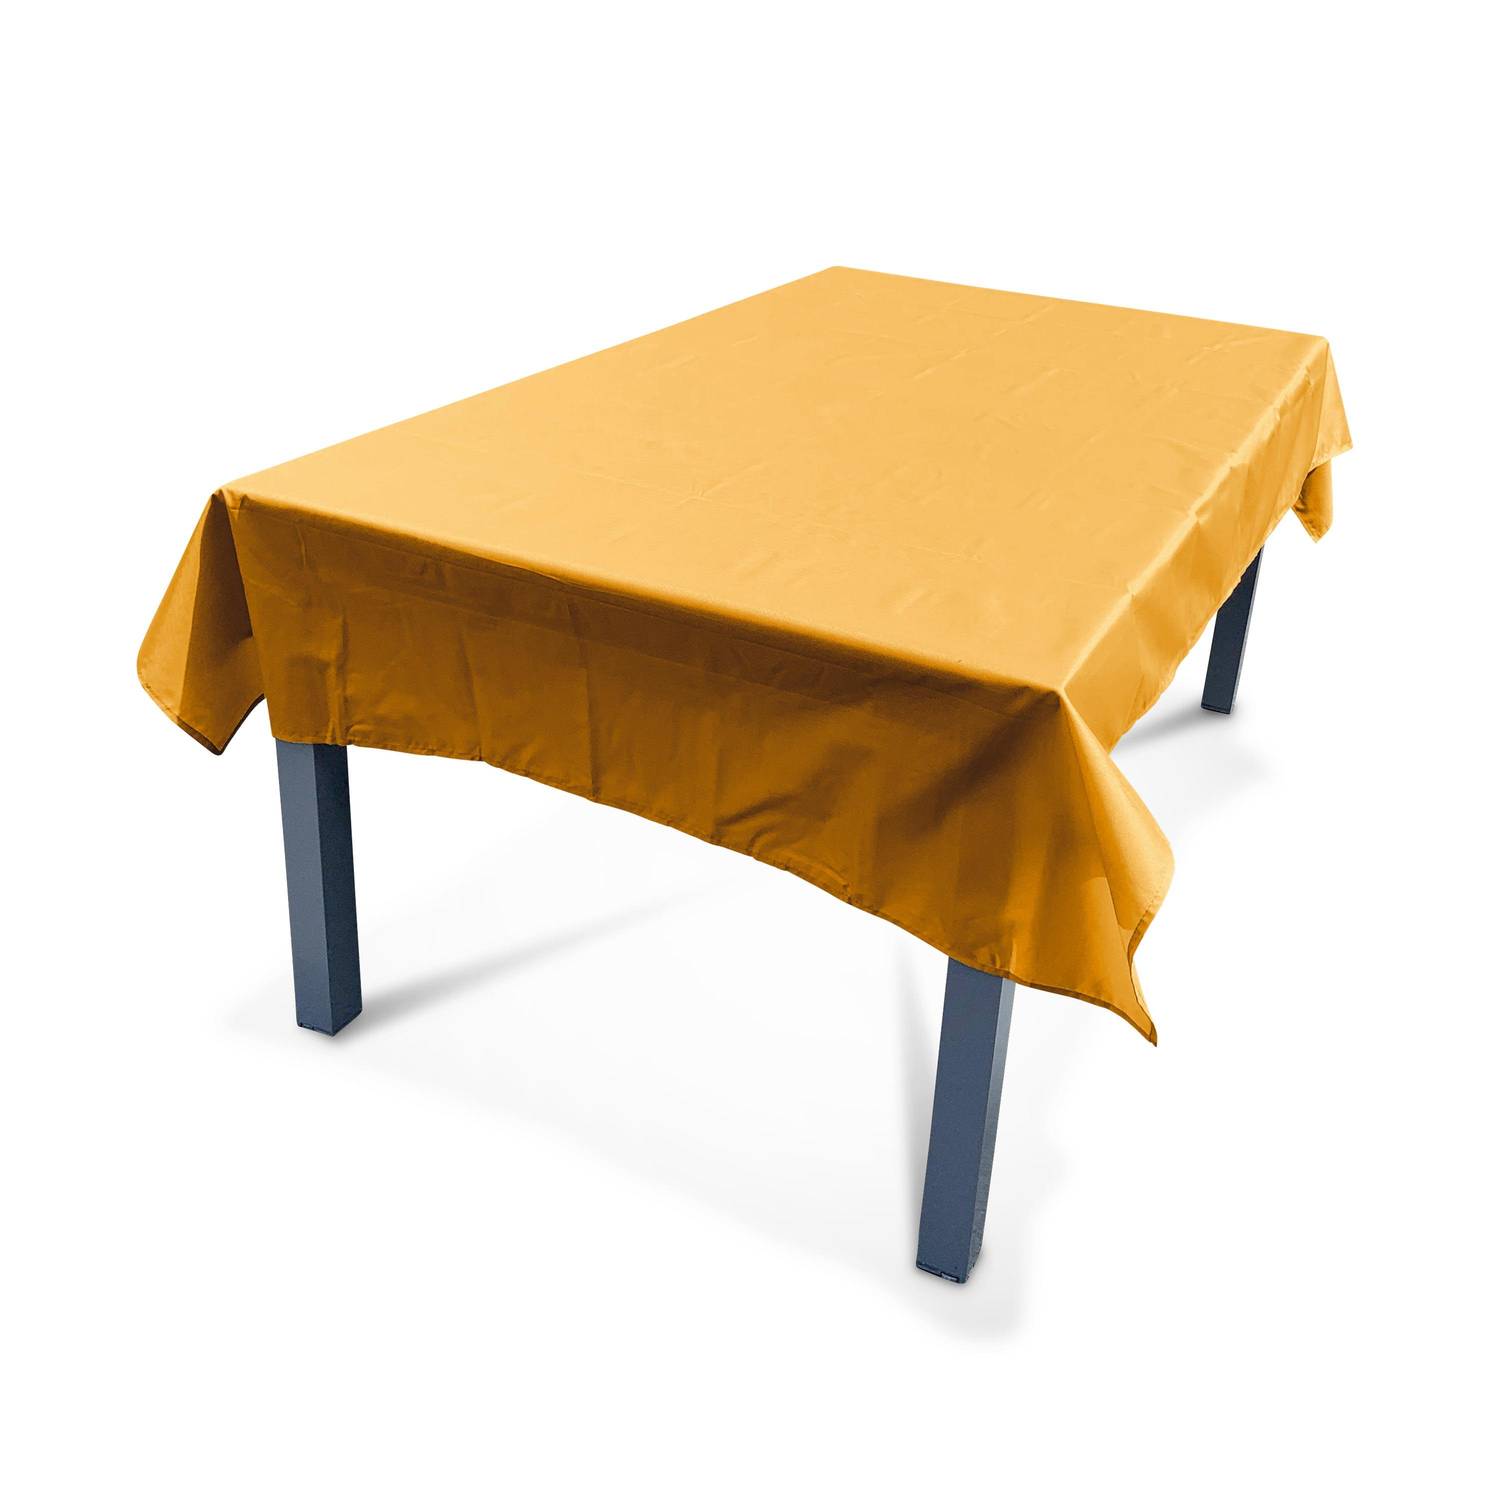 Kollektion HERITAGE - Outdoor-Tischdecke 140 x 240 cm Senffarben, 100% Polyester, schützt den Tisch, UV-Schutz, sommerlicher Stil Photo1